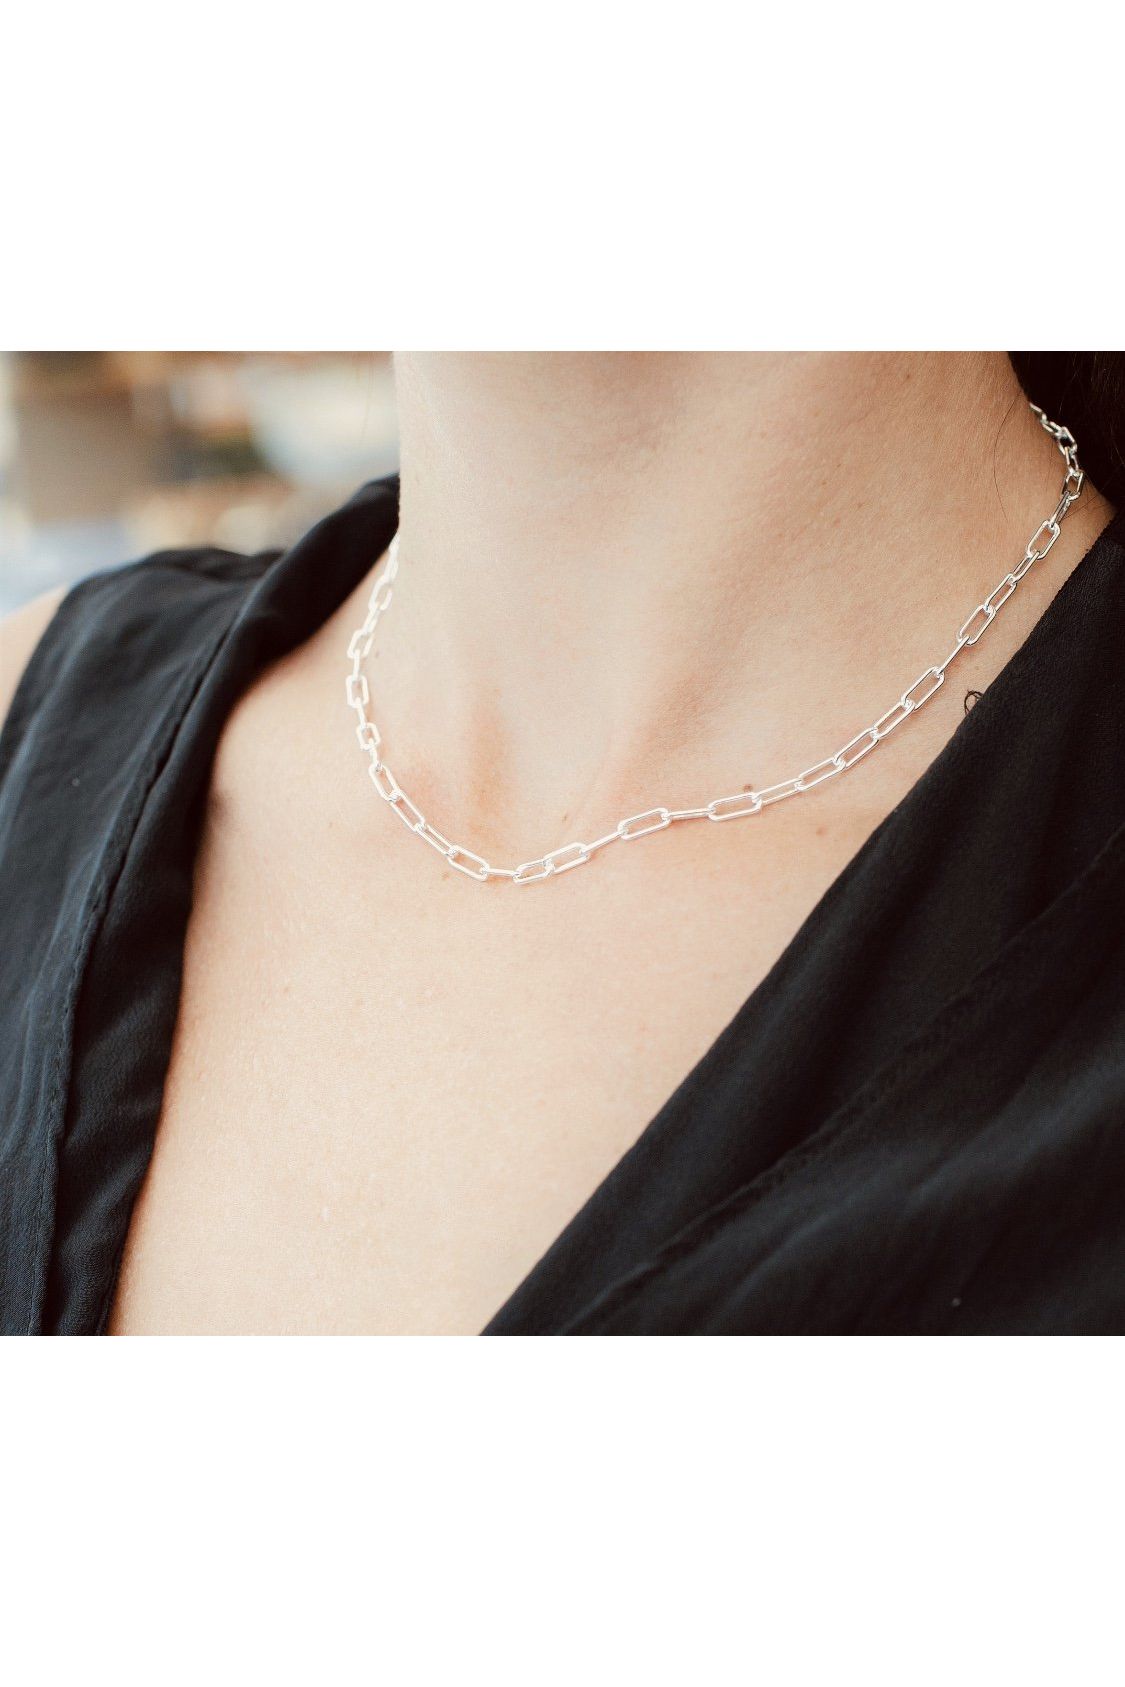 Paris link necklace